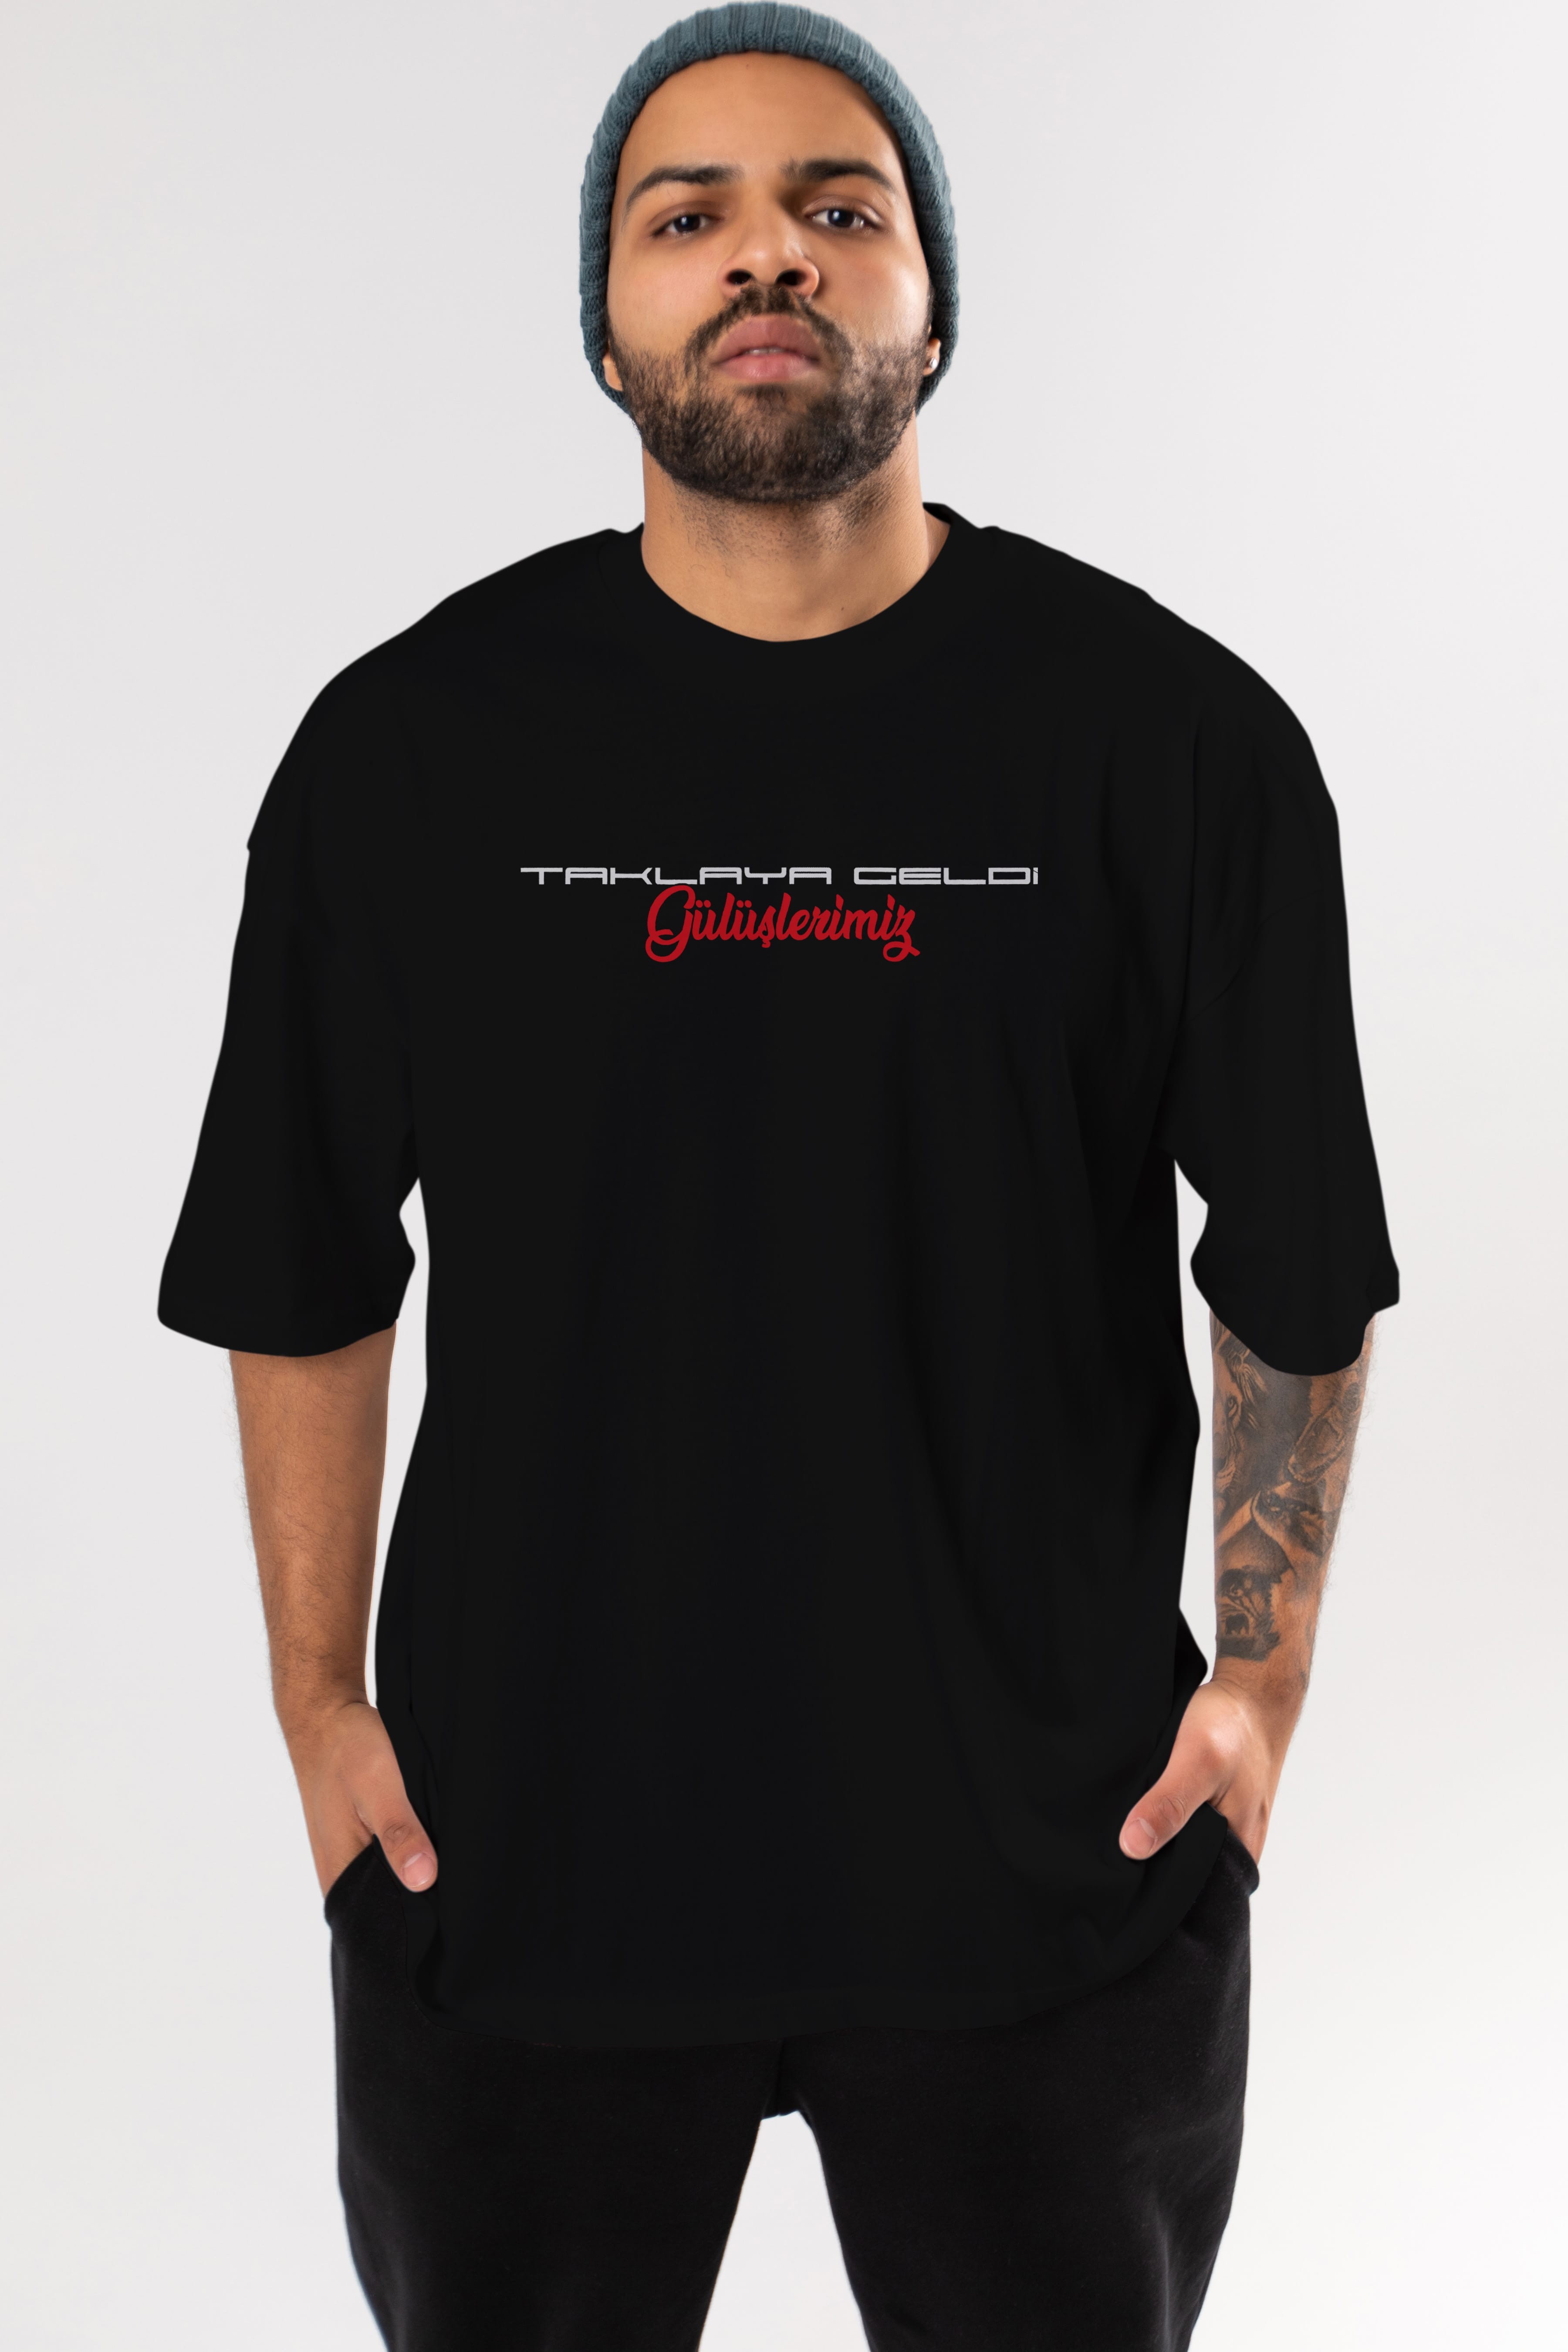 Taklaya Geldi Gülüşlerimiz Ön Baskılı Oversize t-shirt %100 pamuk Erkek Kadın Unisex